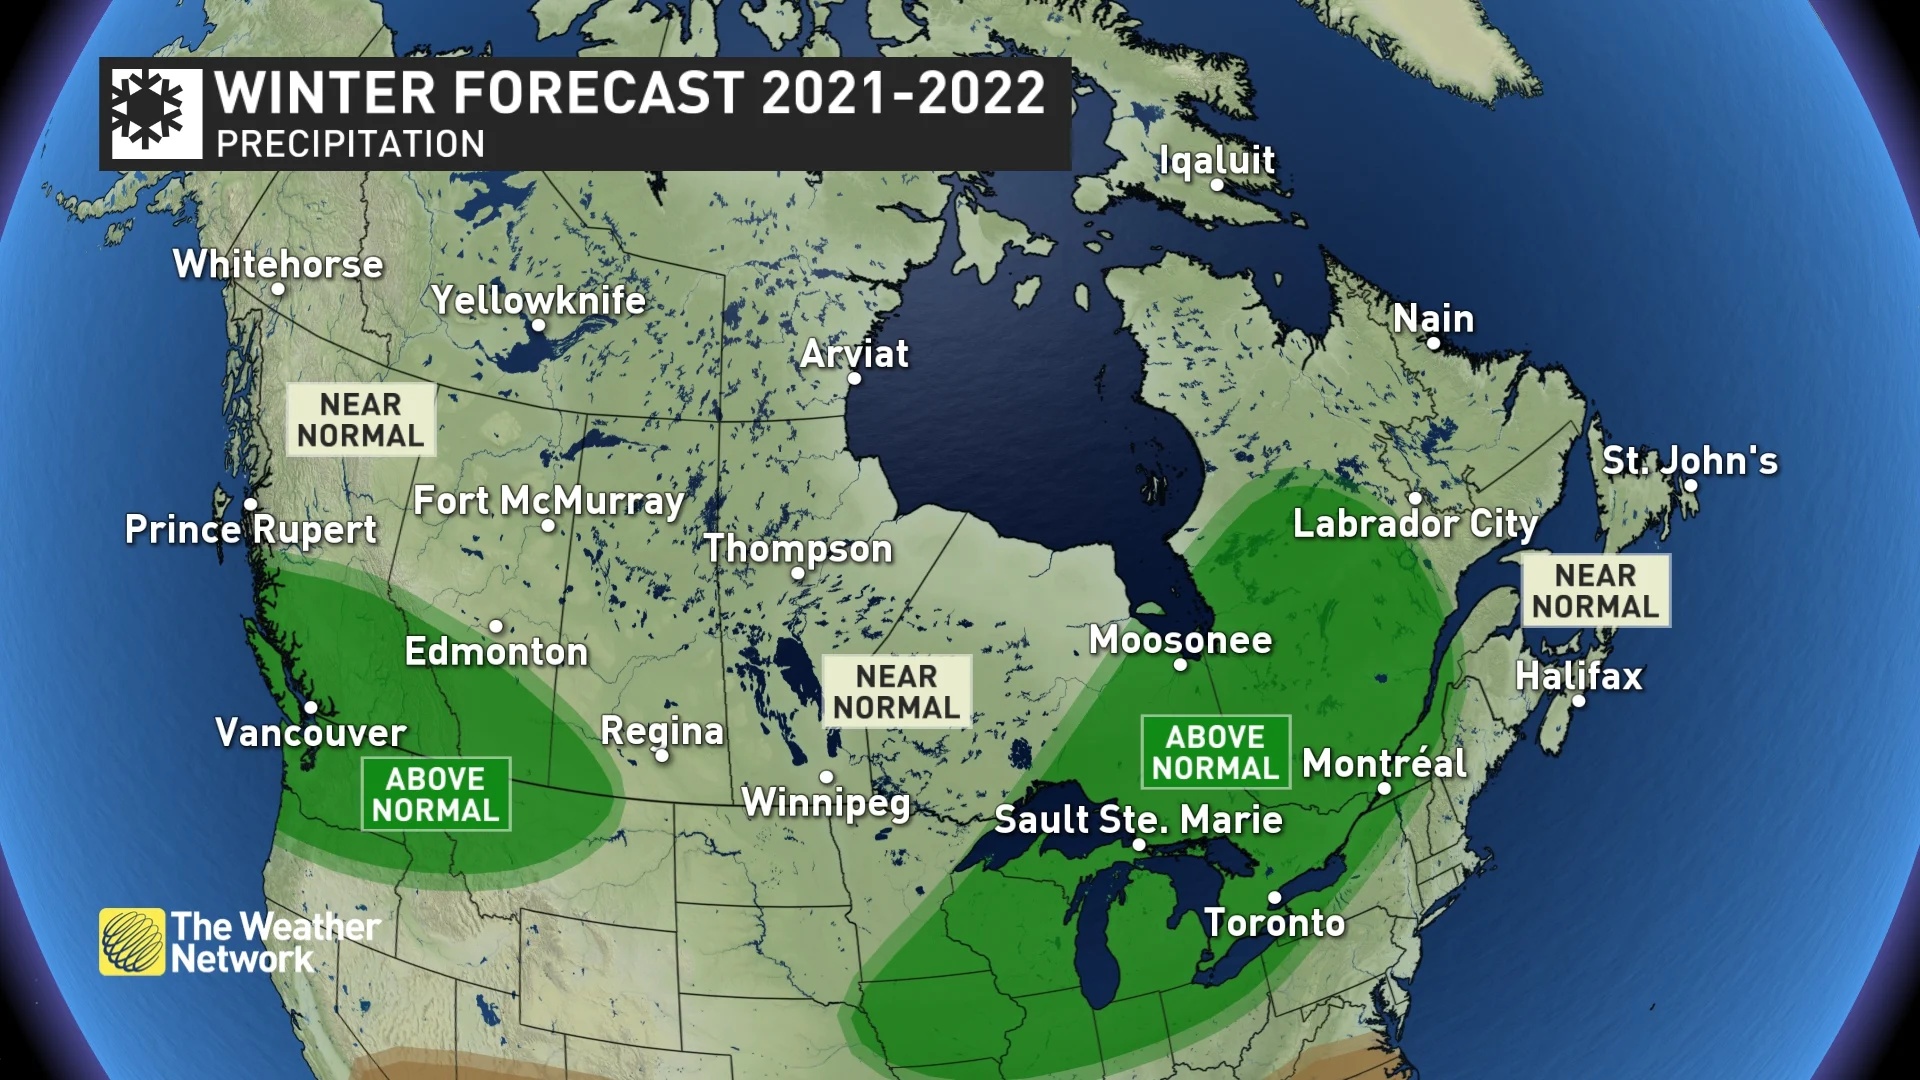 National Precipitation Forecast for Canada's 2021-22 Winter